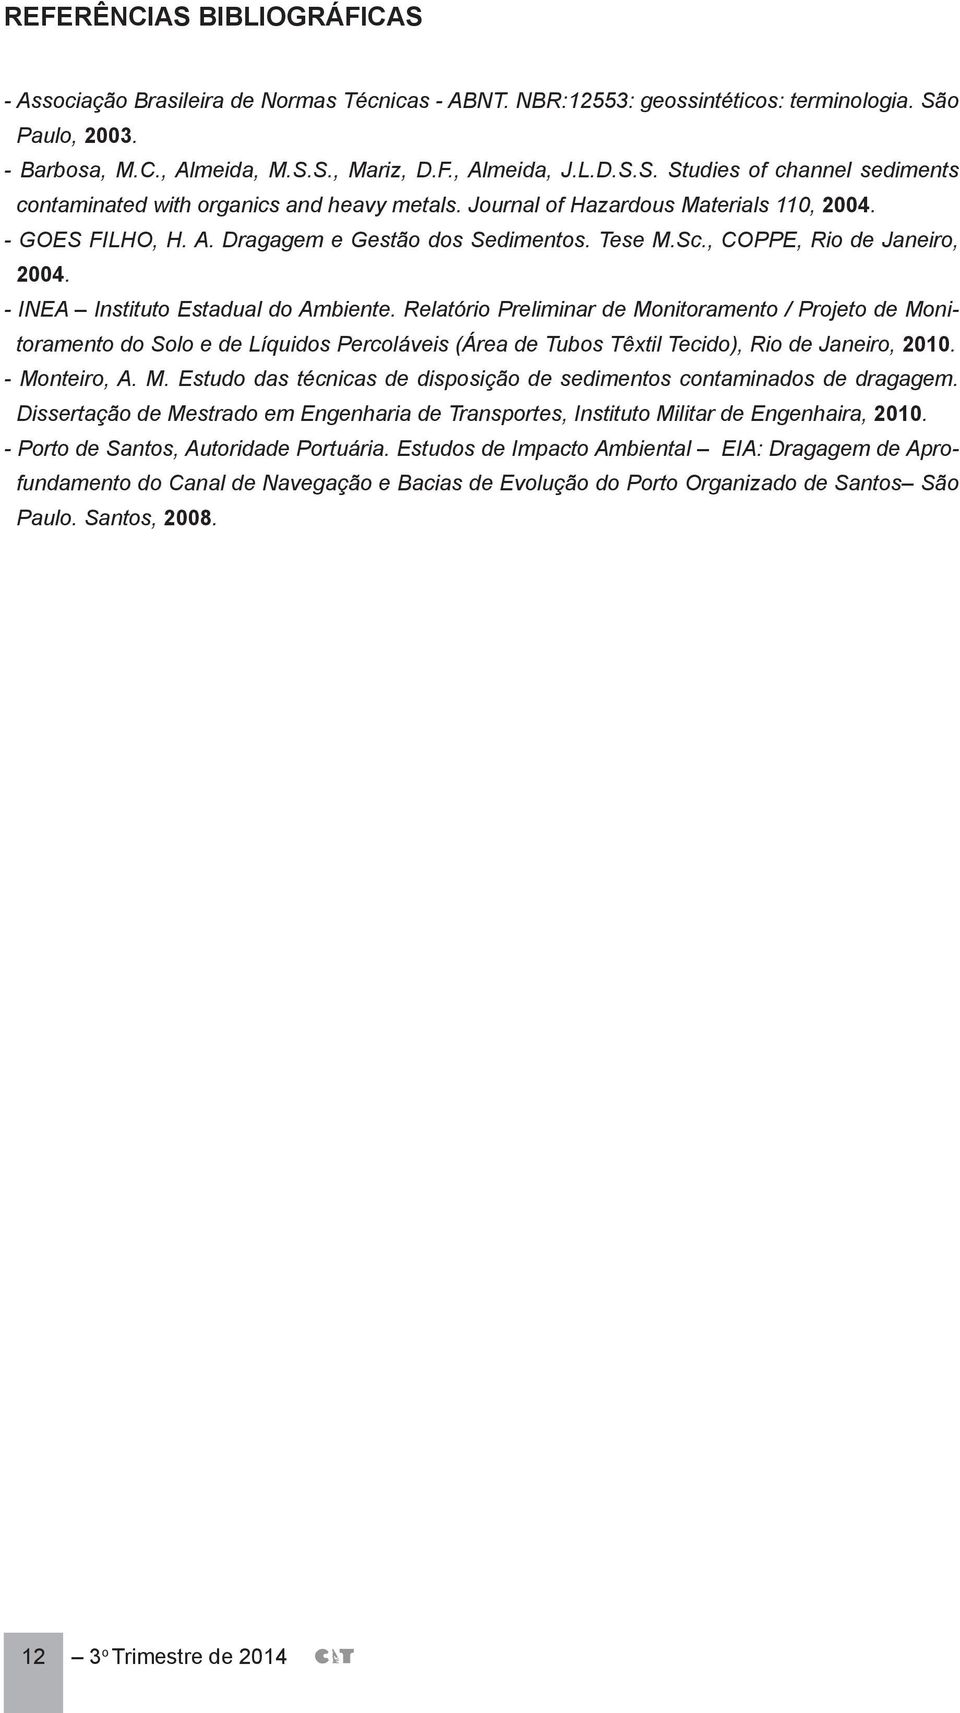 Relatório Preliminar de Monitoramento / Projeto de Monitoramento do Solo e de Líquidos Percoláveis (Área de Tubos Têxtil Tecido), Rio de Janeiro, 2010. - Monteiro, A. M. Estudo das técnicas de disposição de sedimentos contaminados de dragagem.